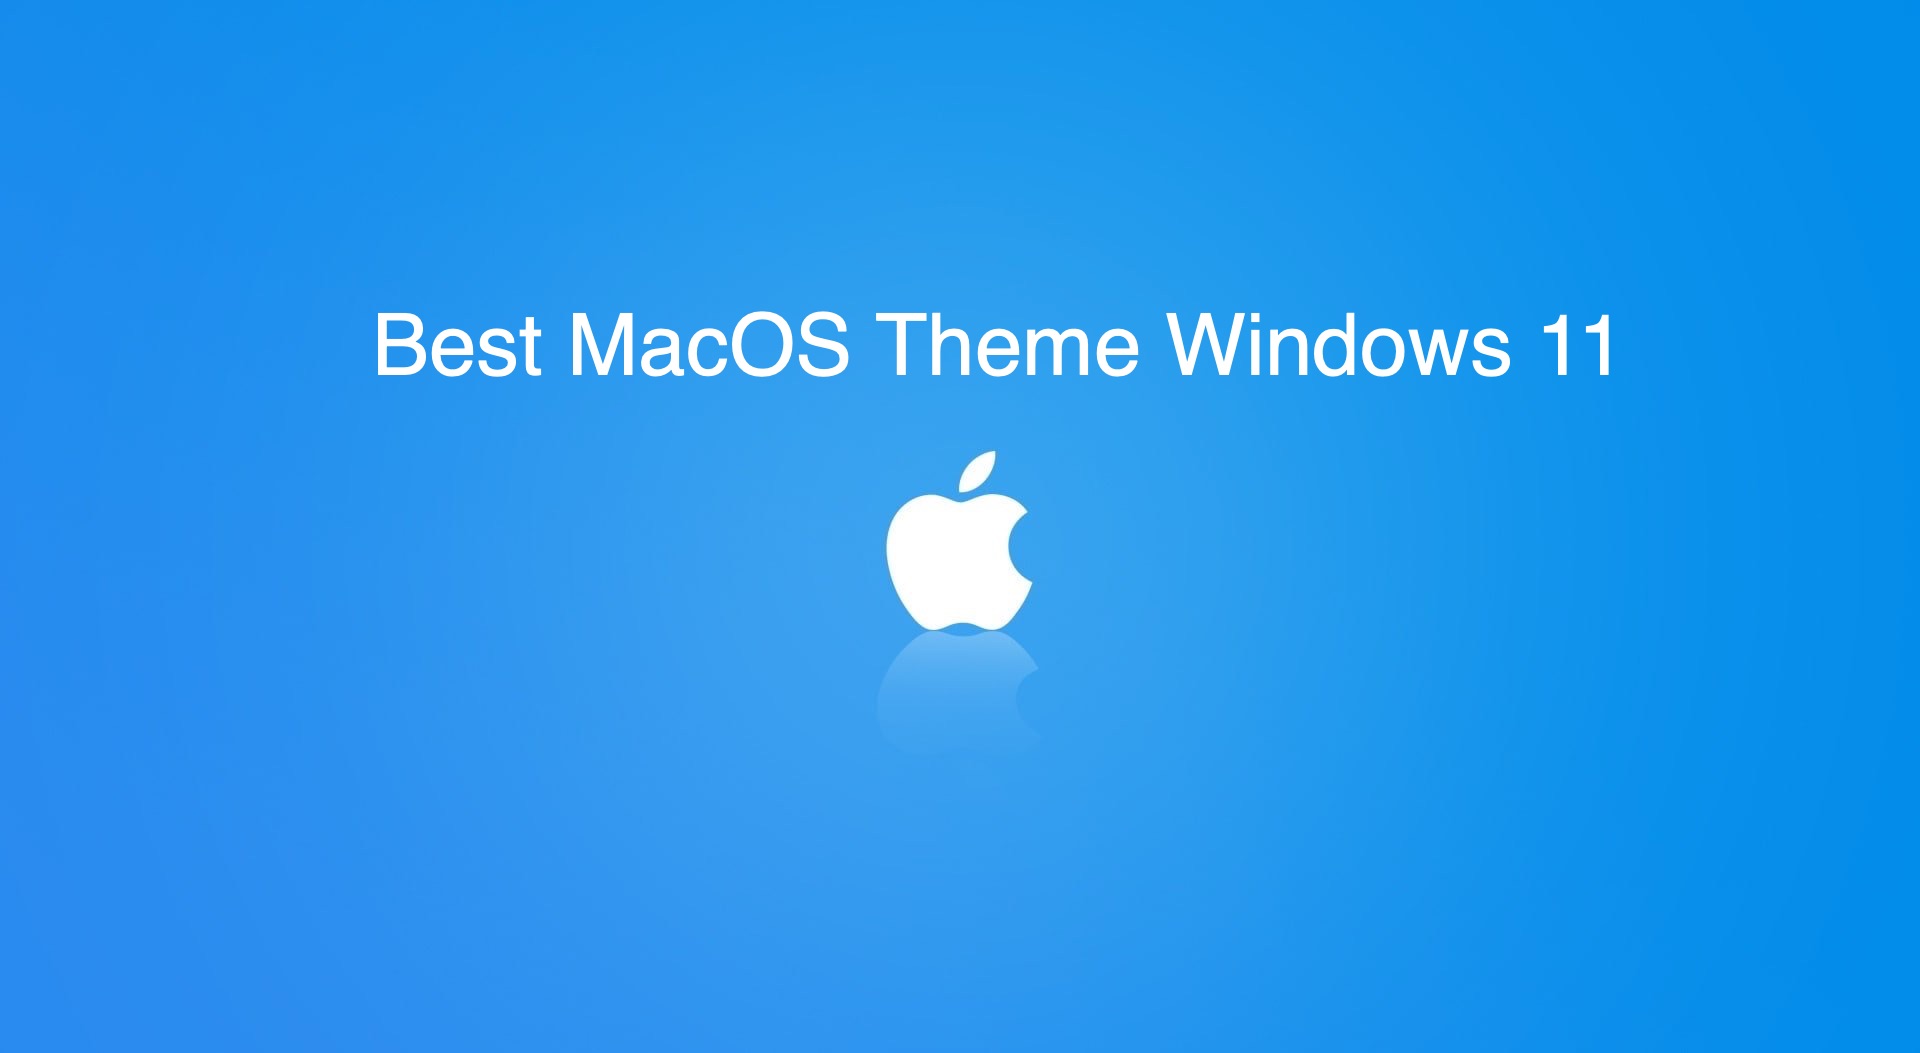 mac os sierra theme for windows 10